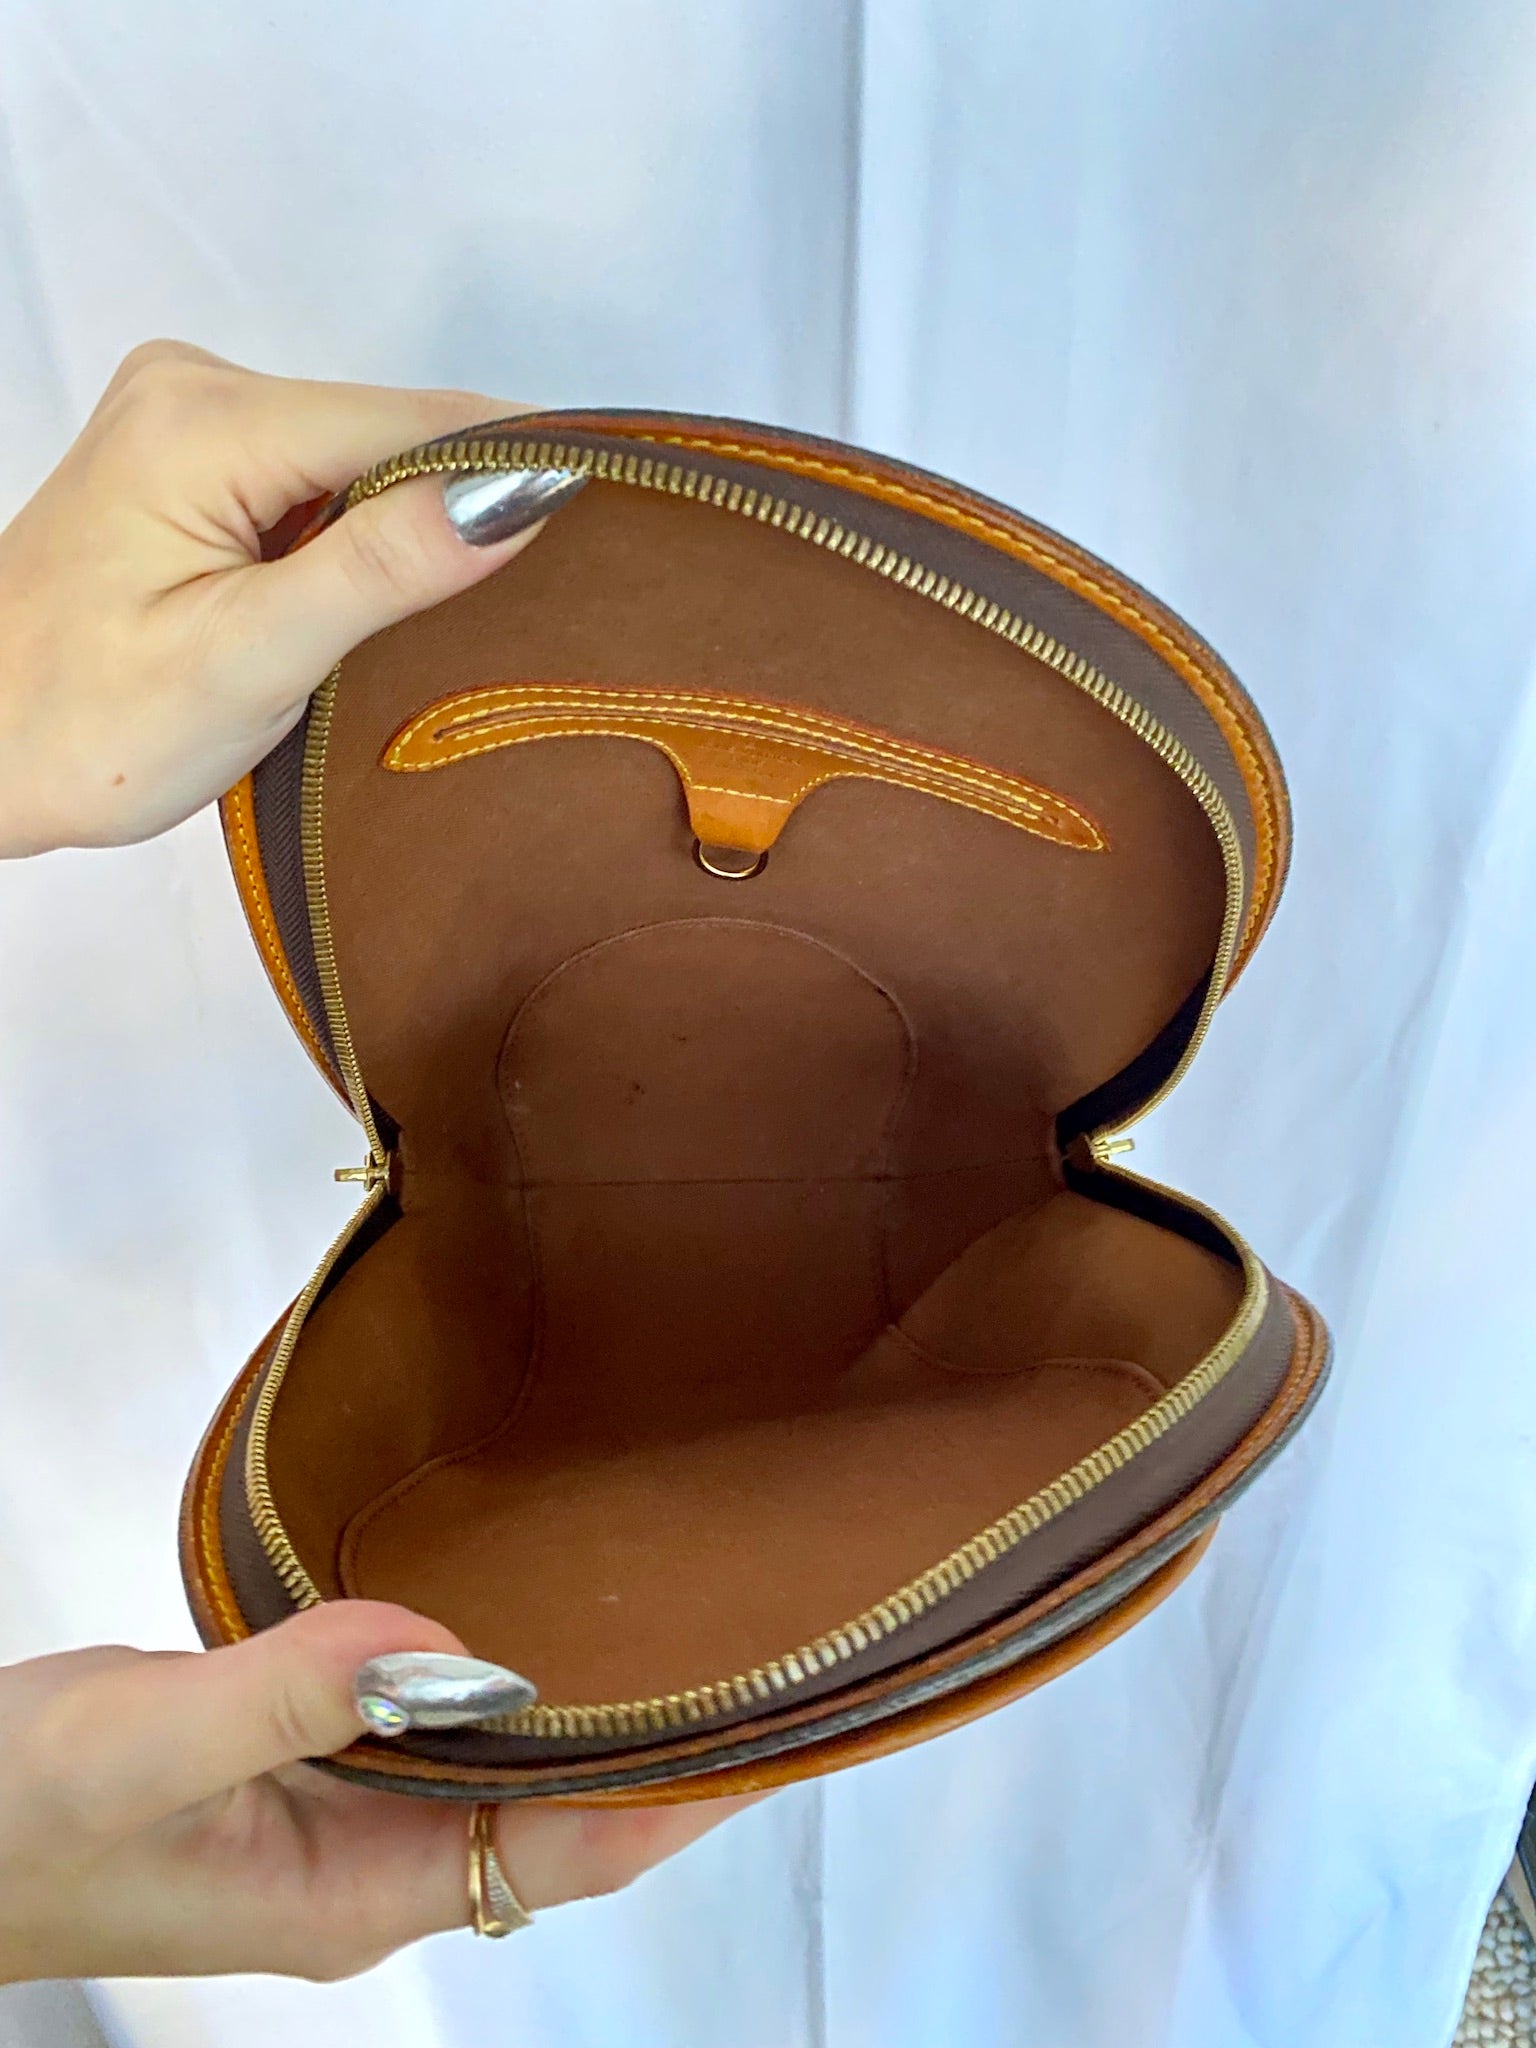 Circa-2007 Louis Vuitton Ellipse Backpack – 2% Vintage